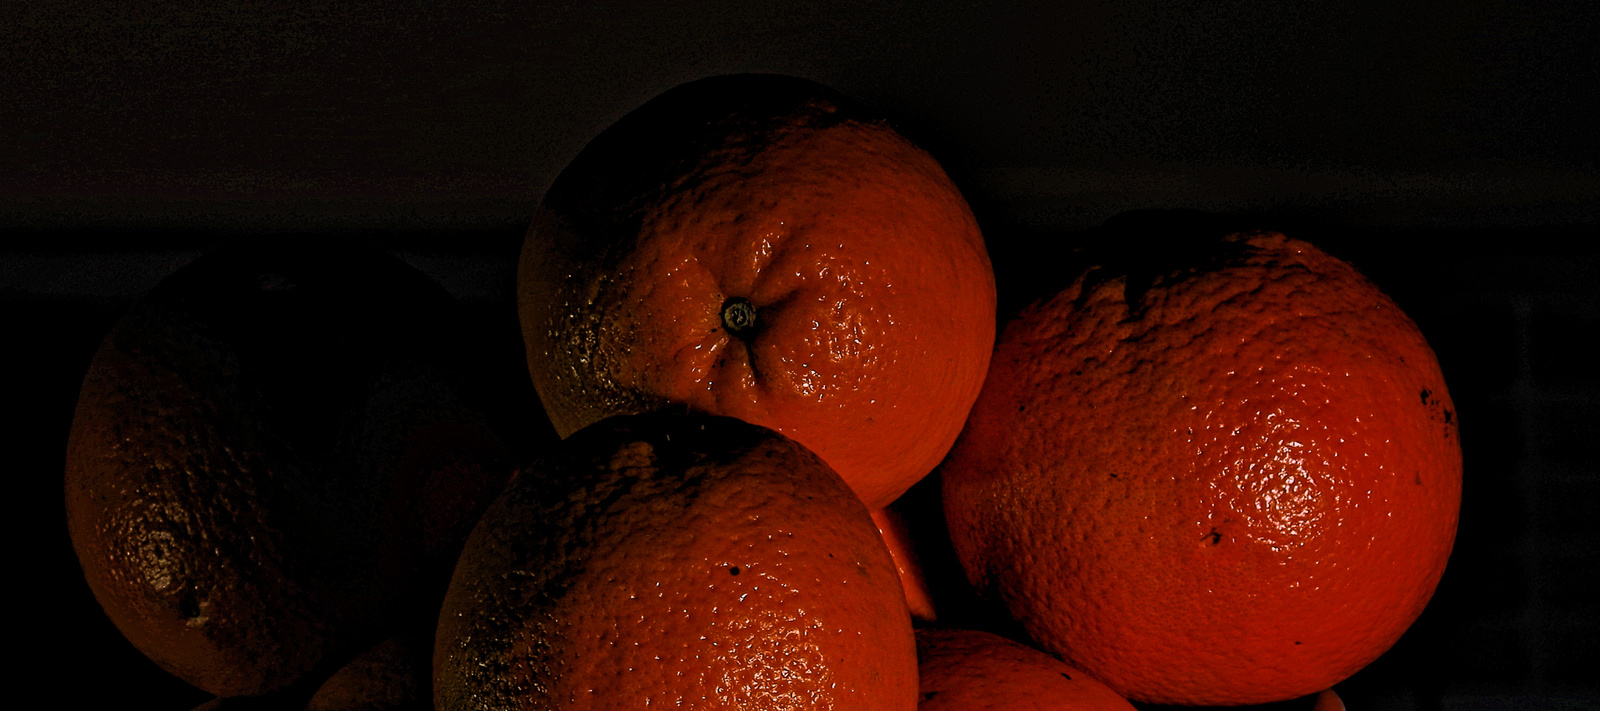 Planet of oranges